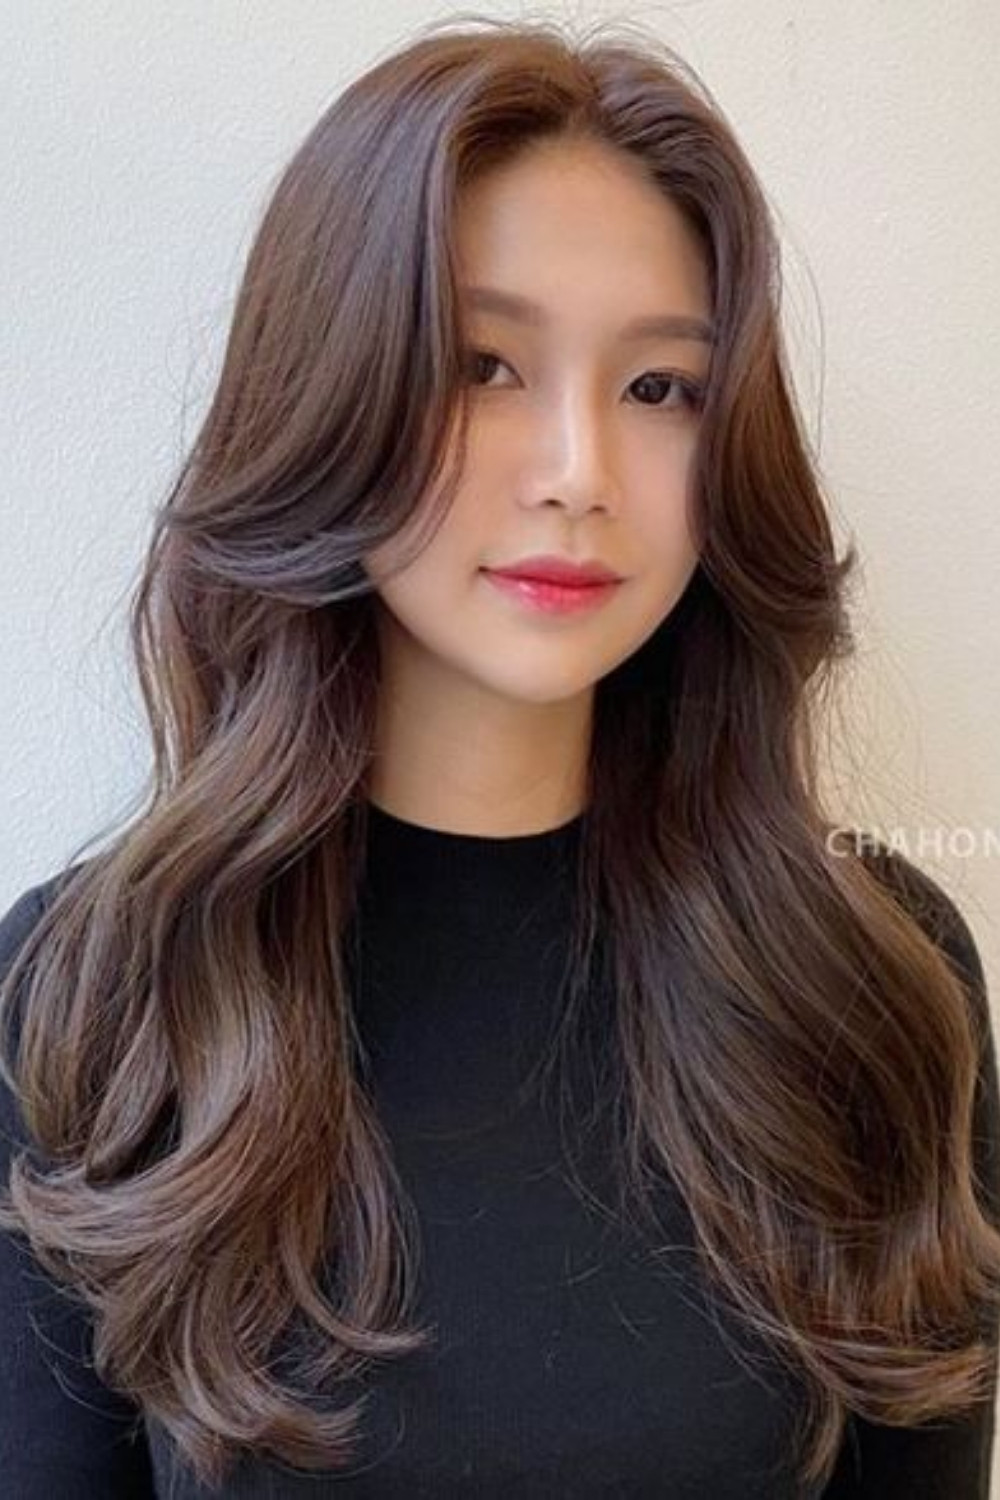 Cắt tóc mái bay tại nhà Hàn Quốc: Bạn đang muốn thay đổi kiểu tóc nhưng không muốn đến tiệm tóc? Hãy cắt tóc mái bay tại nhà Hàn Quốc! Hình ảnh này sẽ cho bạn thấy cách cắt tóc và kiểm soát chiều dài mái bay. Cùng xem nhé!